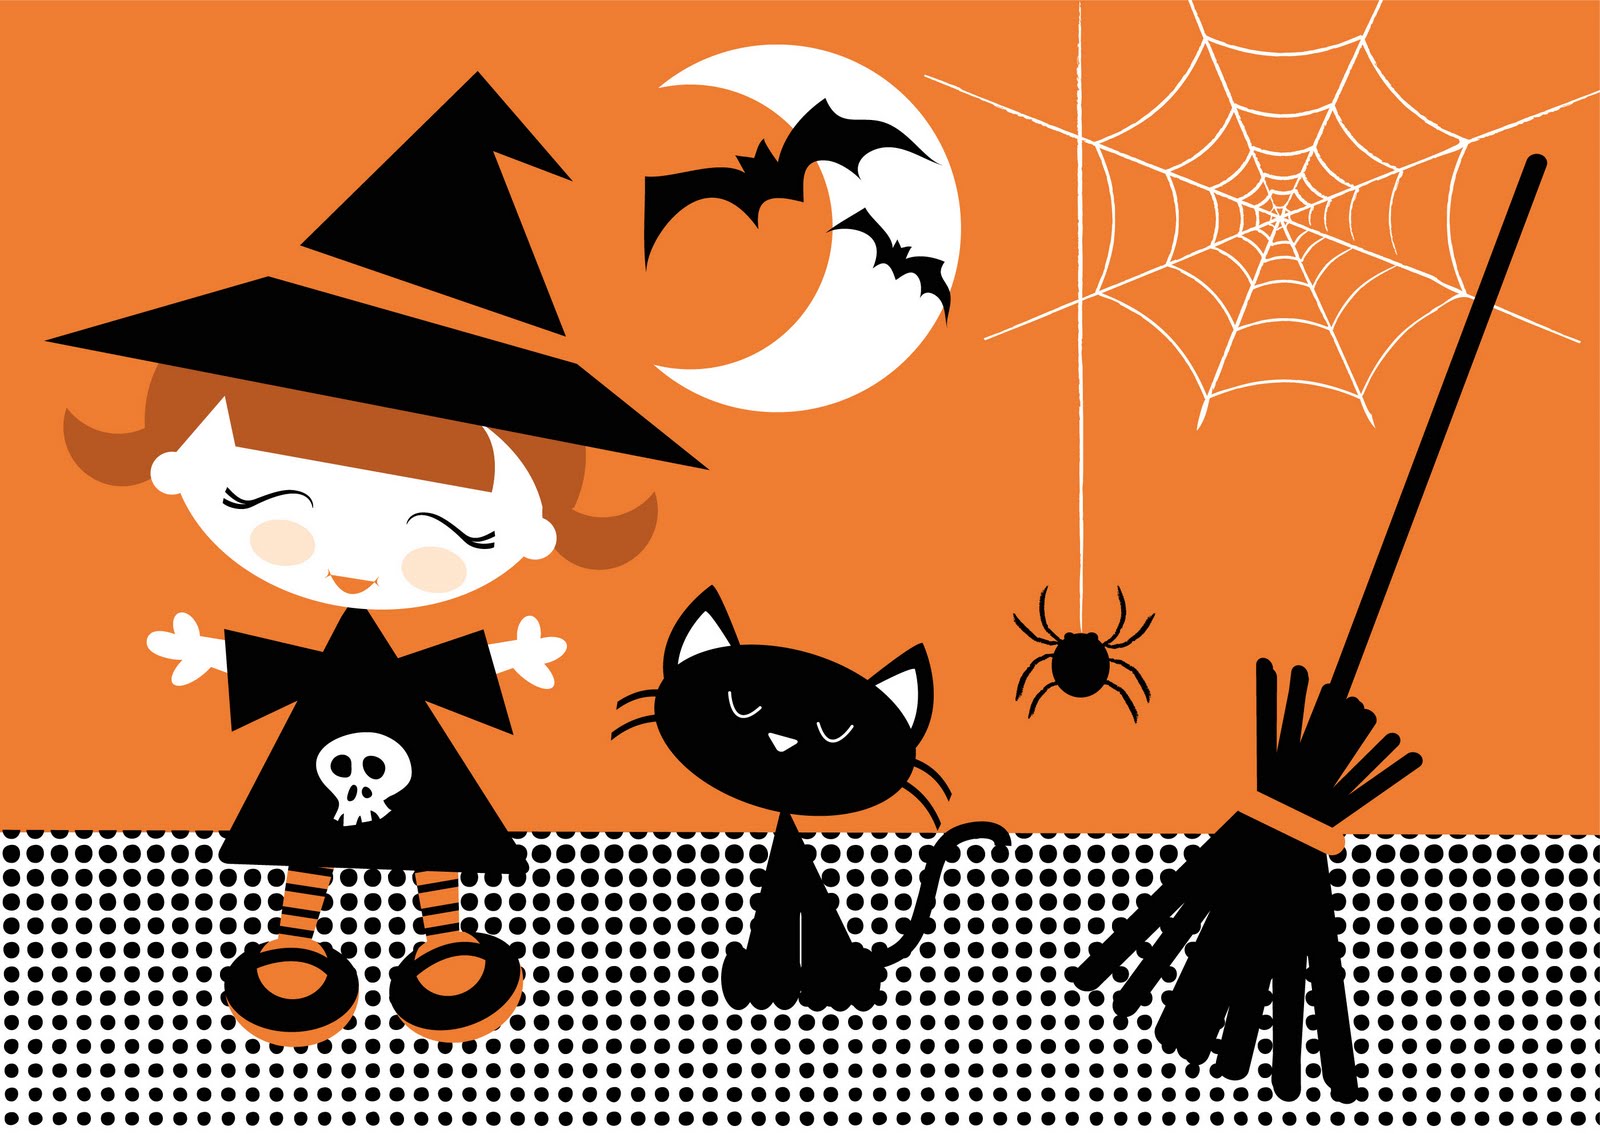 Fondos De Halloween Para Imprimir Imagenes Y Dibujos Para Imprimir